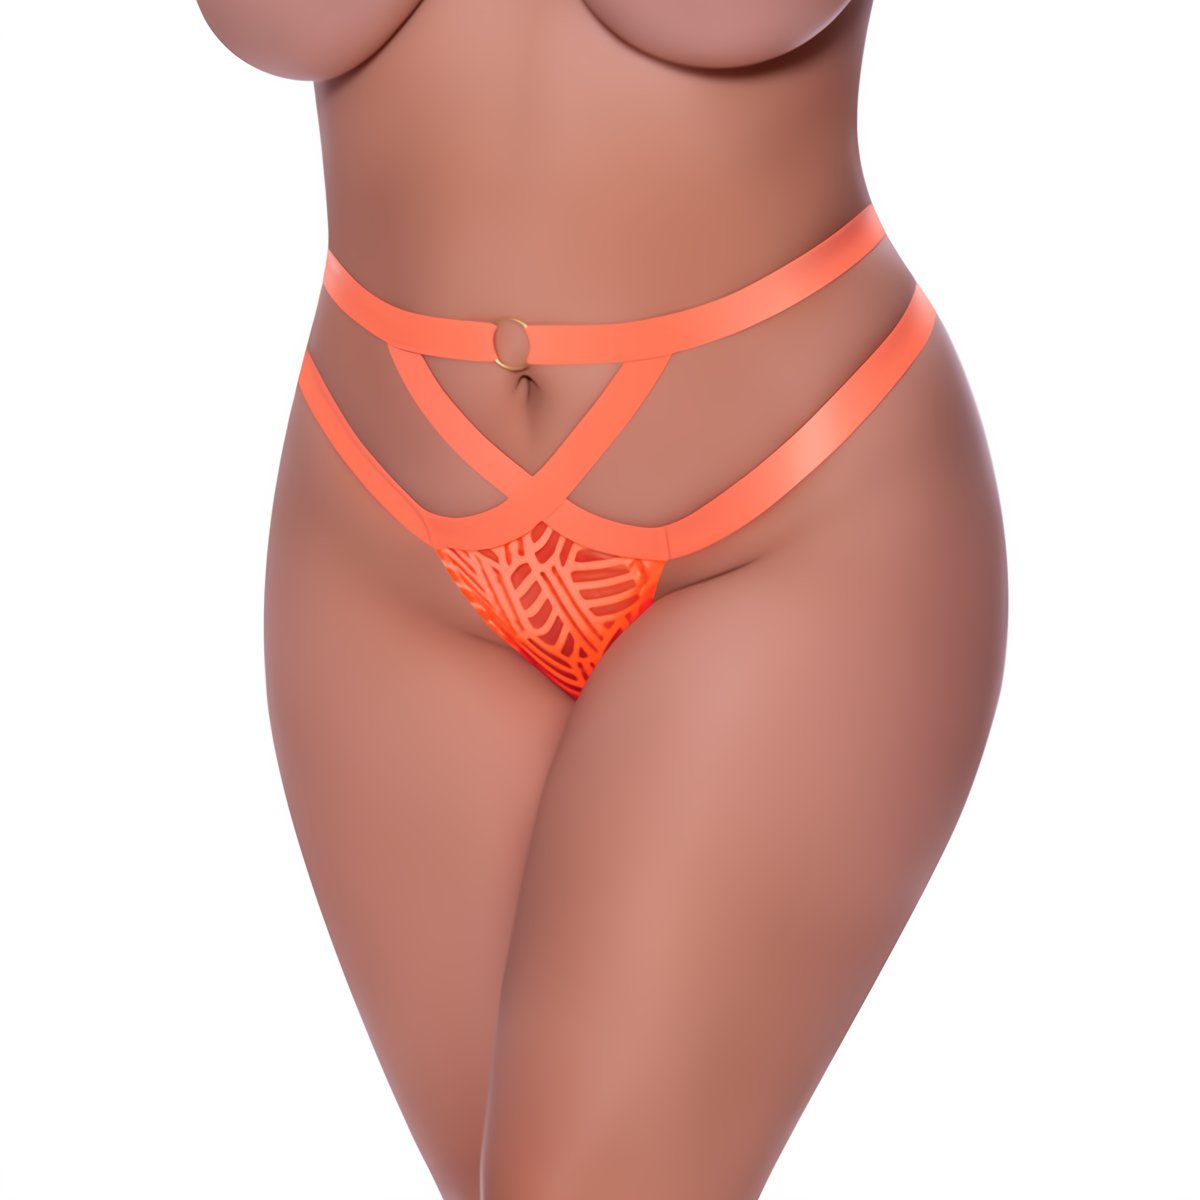 Cheeky Panty - 2XL - Orange - EroticToyzProducten,Lingerie,Lingerie voor Haar,Queen size,Strings en Slipjes,,VrouwelijkMagic Silk